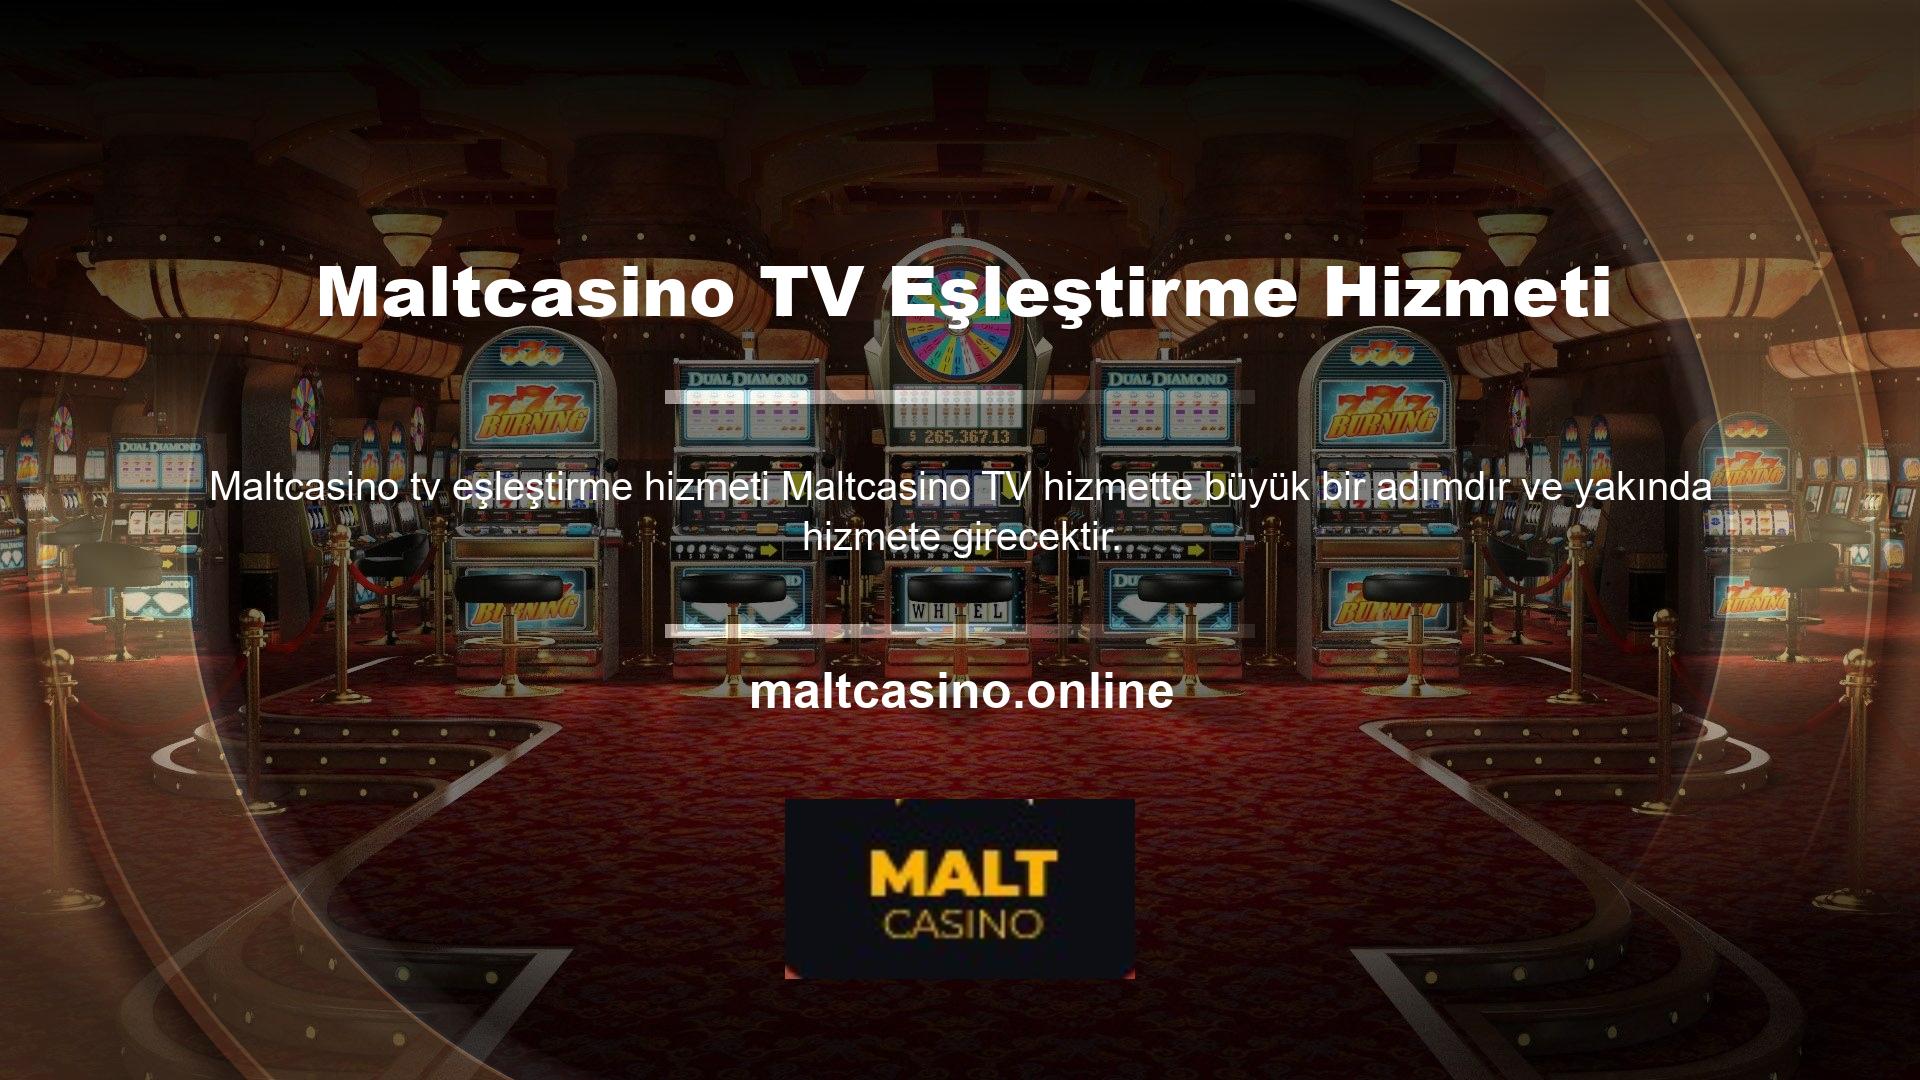 Sonuç olarak, Maltcasino web sitesi son derece detaylı ve zengin içerikleriyle ilgi odağı haline gelmiştir